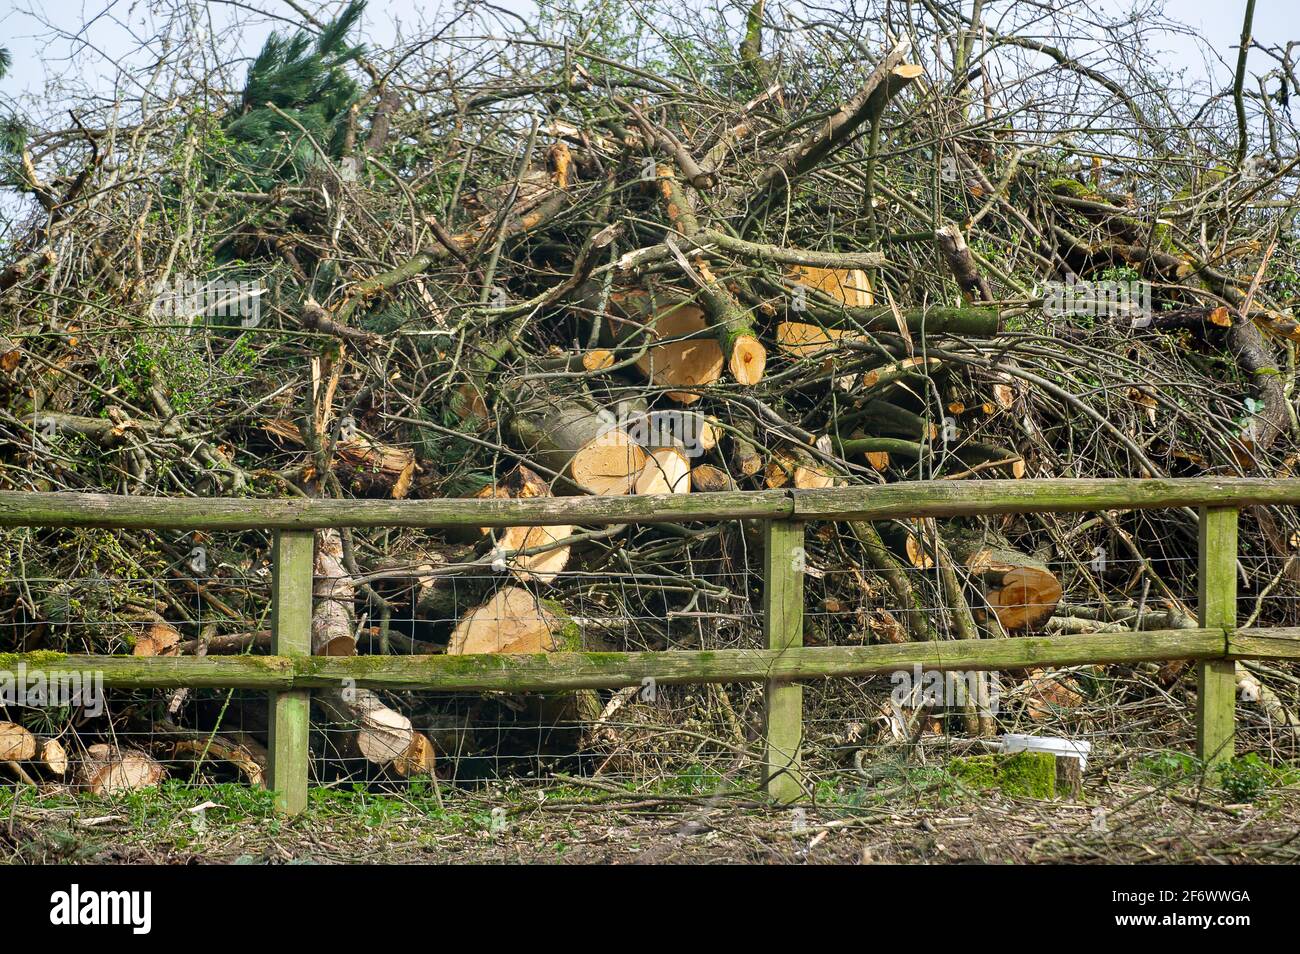 Aylesbury Valle, Großbritannien. April 2021. HS2 fällte heute auf der Road Barn Farm in Aylesbury Vale in der Nähe von Wendover weitere riesige Bäume, um vor der A413 eine Bentonitfabrik zu errichten. Einheimische und Umweltschützer sind wütend über die Entwertung, die HS2 für die Chilterns verursacht, die eine AONB ist. Die Hochgeschwindigkeitsbahn 2 von London nach Birmingham hat enorme negative Auswirkungen auf die Tierwelt und die Umwelt, wobei HS2 nur sehr wenig Maßnahmen zur 'Minderung' ergreift. Quelle: Maureen McLean/Alamy Stockfoto